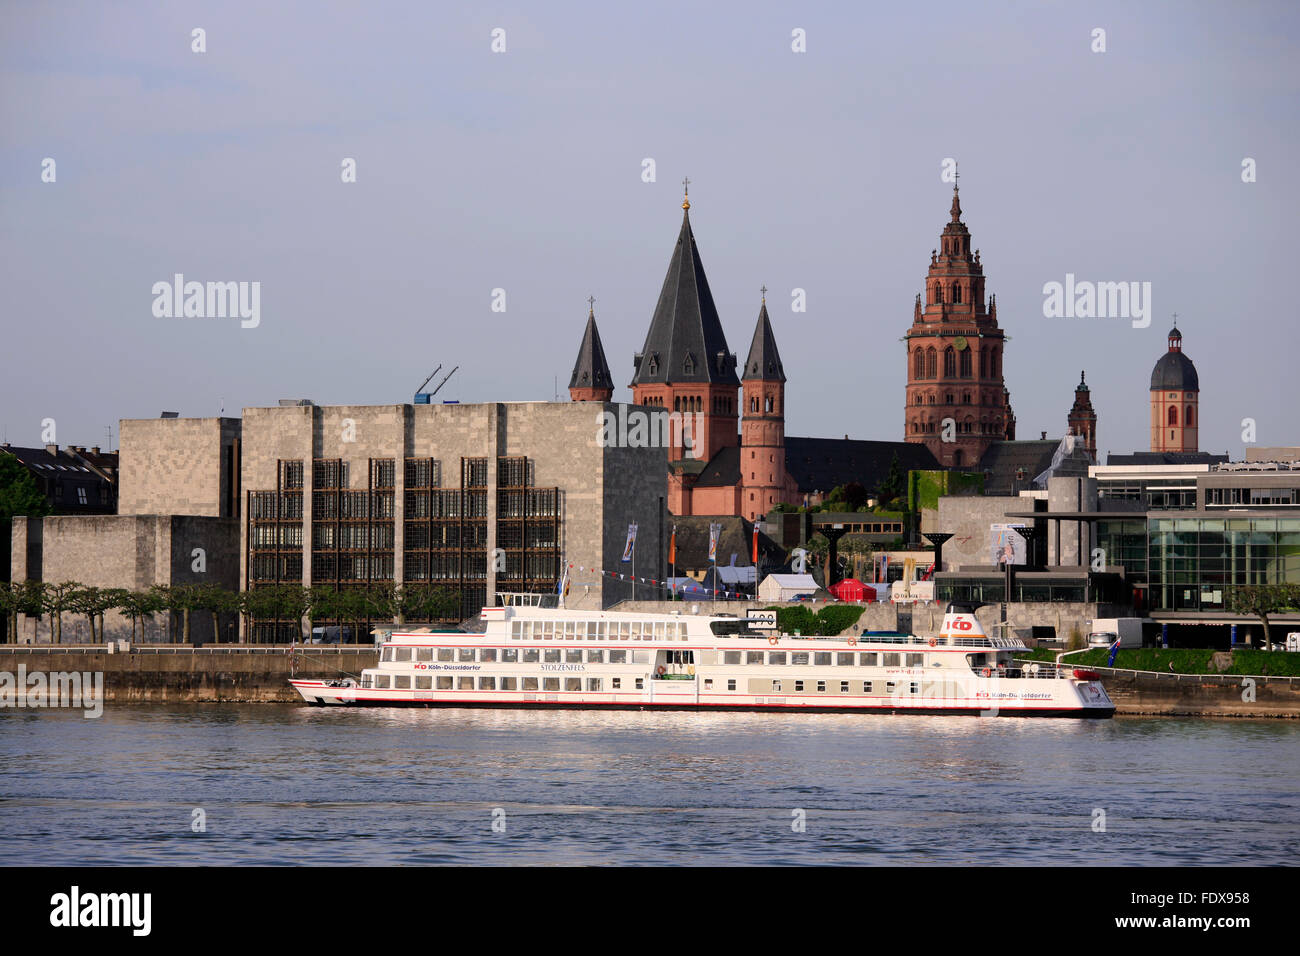 Europa, Deutschland, Renania-Palatinato, Mainz, Uferpromenade mit Rheingoldhalle und Dom San Martin Foto Stock